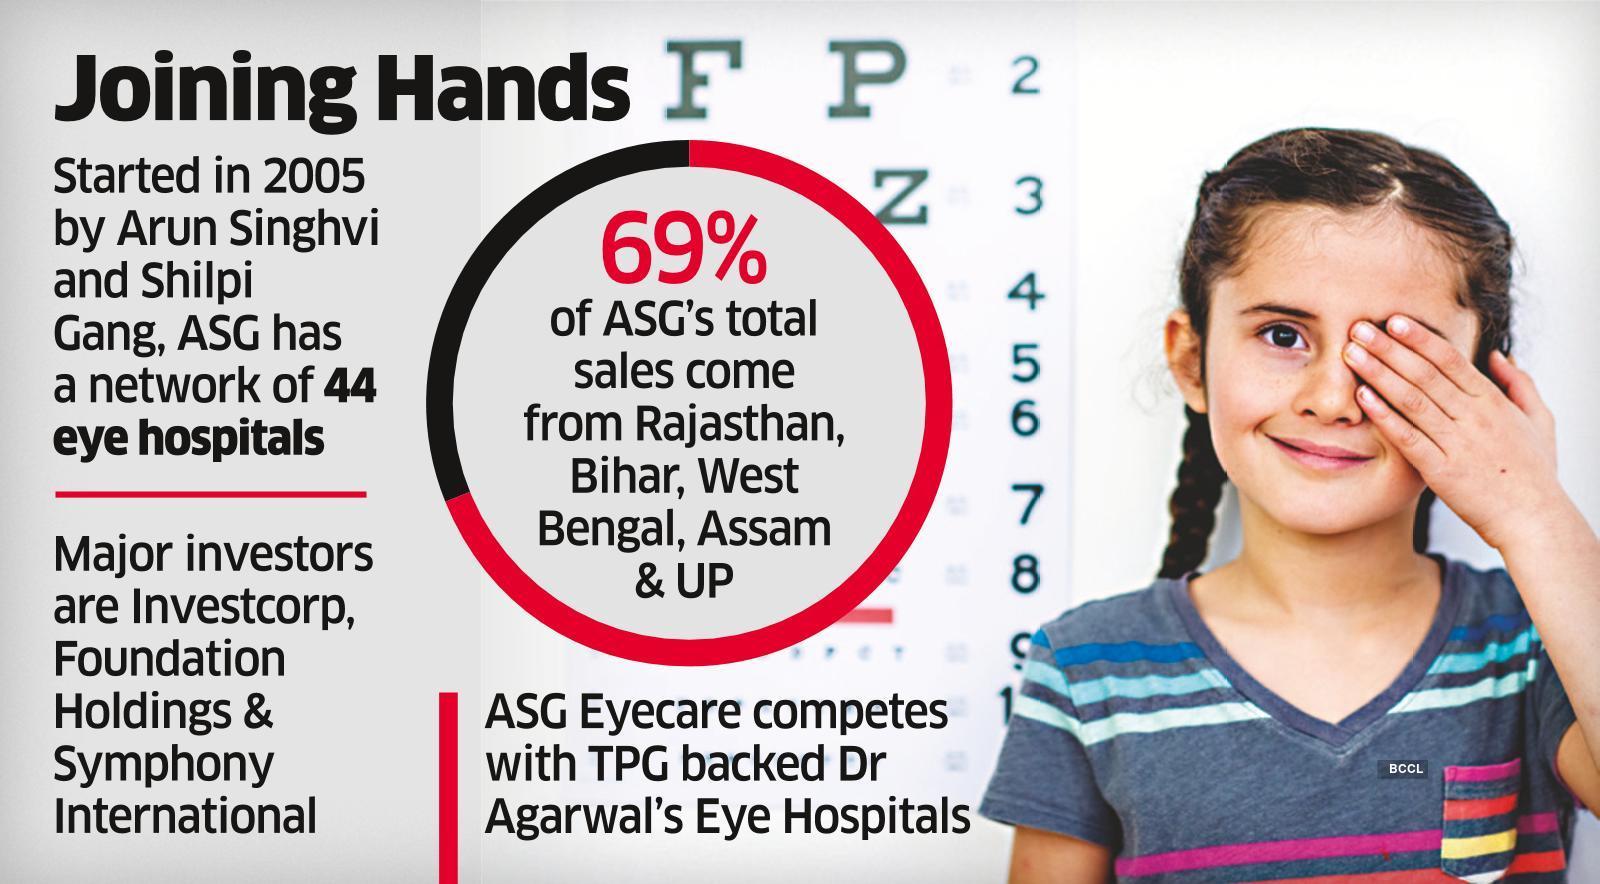 GA-Kedaara may Pick Up 49% in ASG Eye Hospital